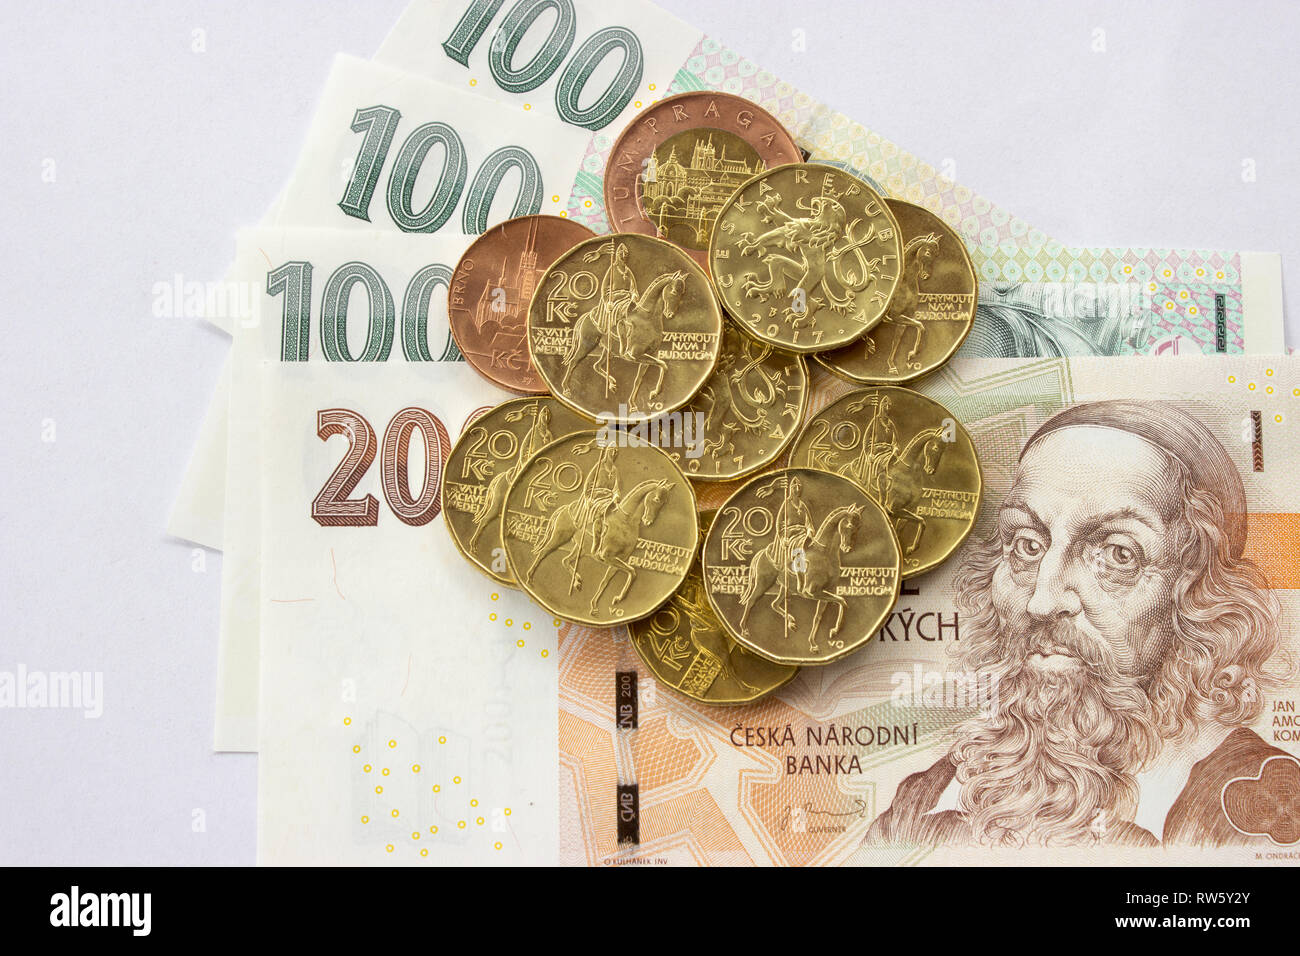 Tschechische Münze auf den verschiedenen tschechischen Banknoten Geld wie Hintergrund. Hundert Kronen, zwei hundert Kronen, zwanzig Kronen Münzen Stockfoto